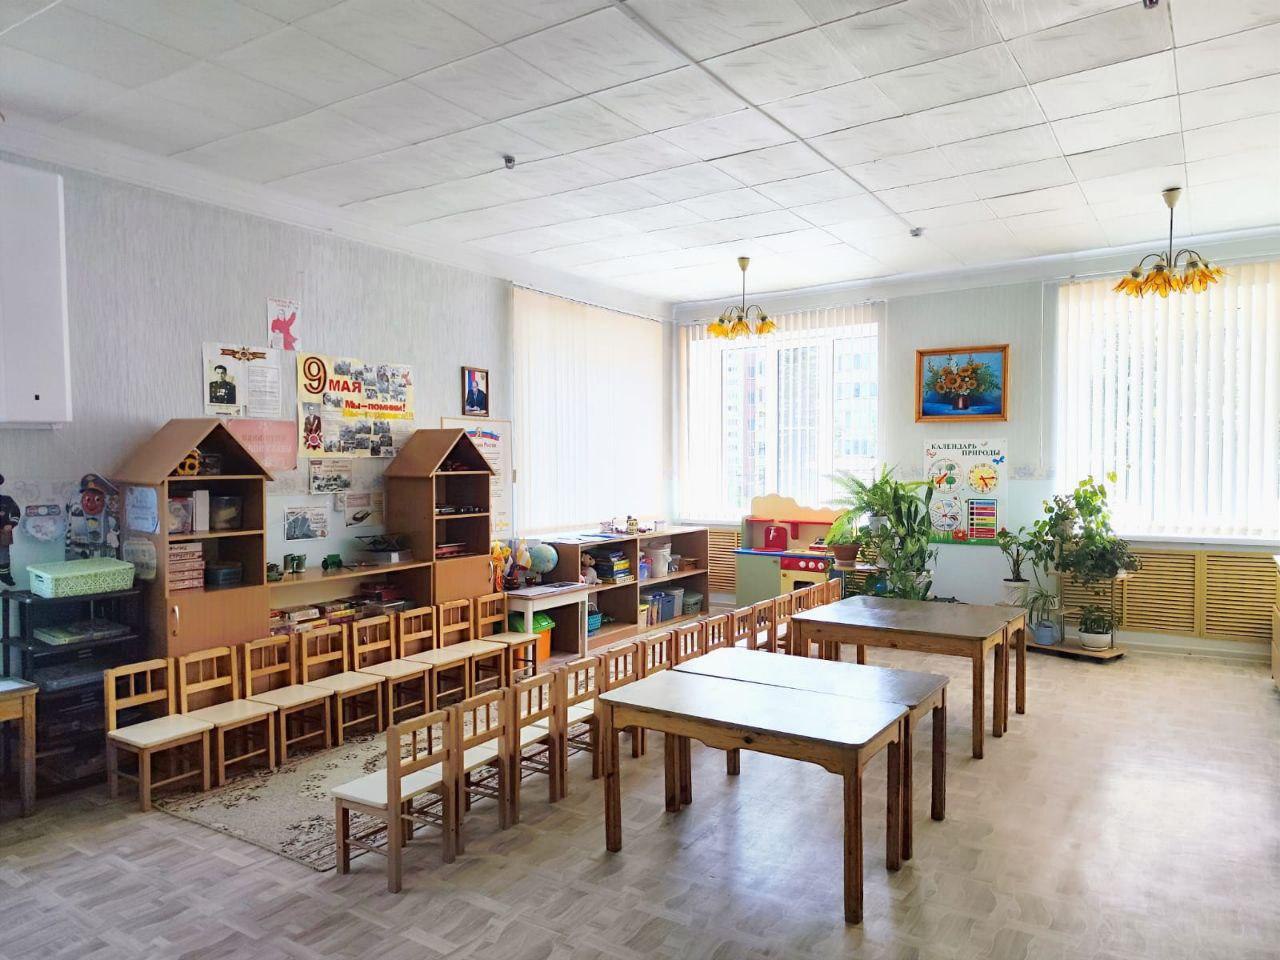 Все 74 дошкольных учреждения Ставрополя прошли летнюю приемку